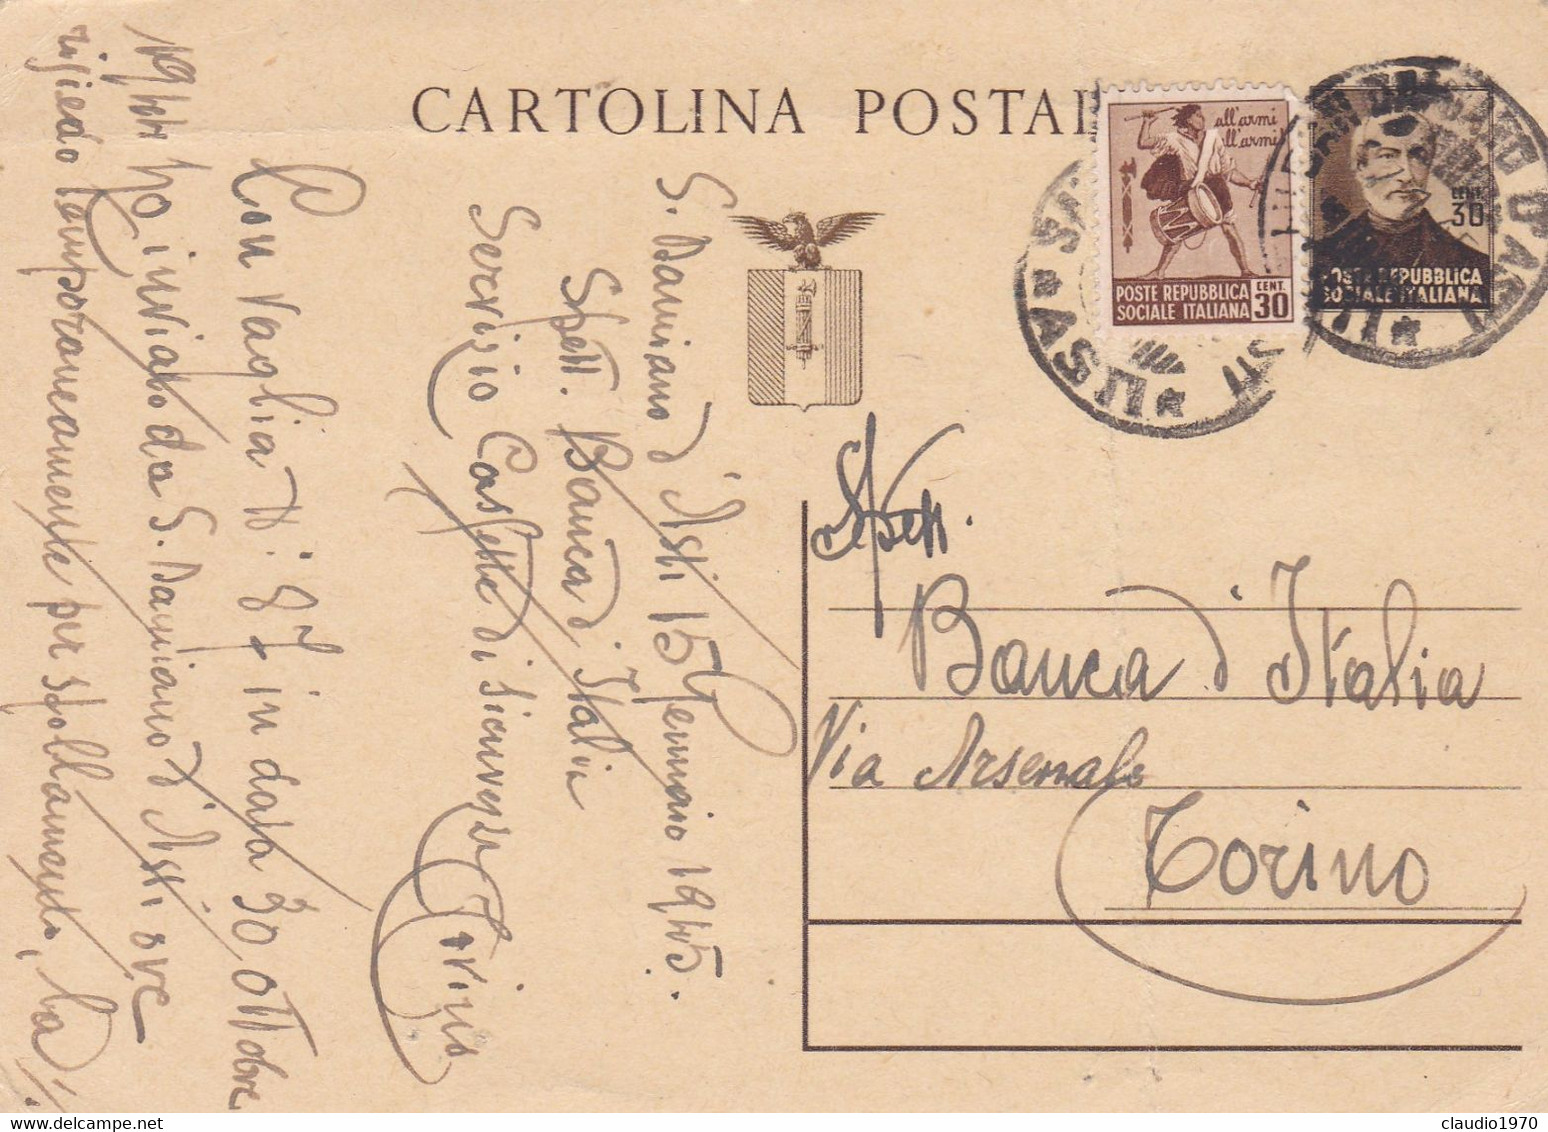 REPUBBLICA SOCIALE -S. DOMENICO D'ASTI- ITALIA - CARTOLINA POSTALE C. 30  + C. 30- GIUSEPPE MAZZINI - VG. PER TORINO - Stamped Stationery